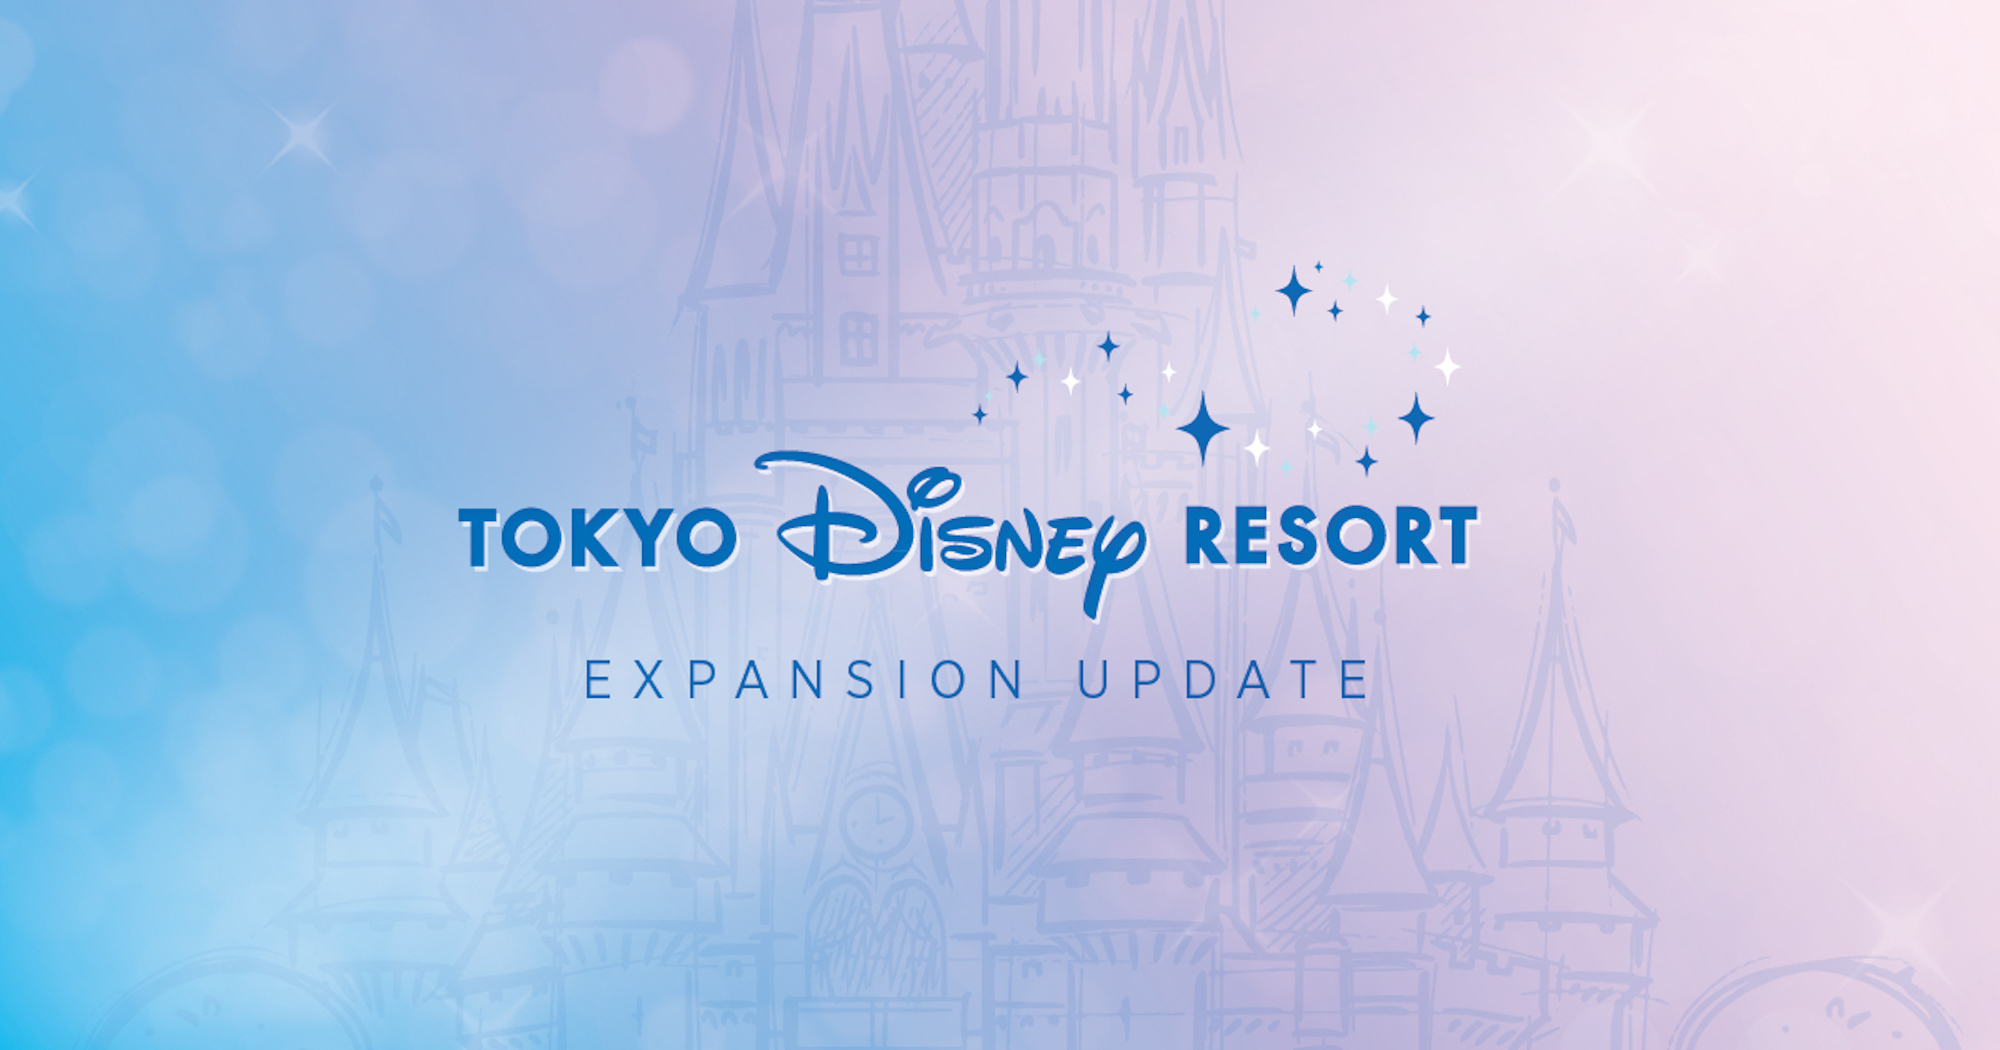 Tokyo Disneyland estrenó el pasado lunes 28 de setiembre nuevas expansiones y atracciones en sus principales áreas